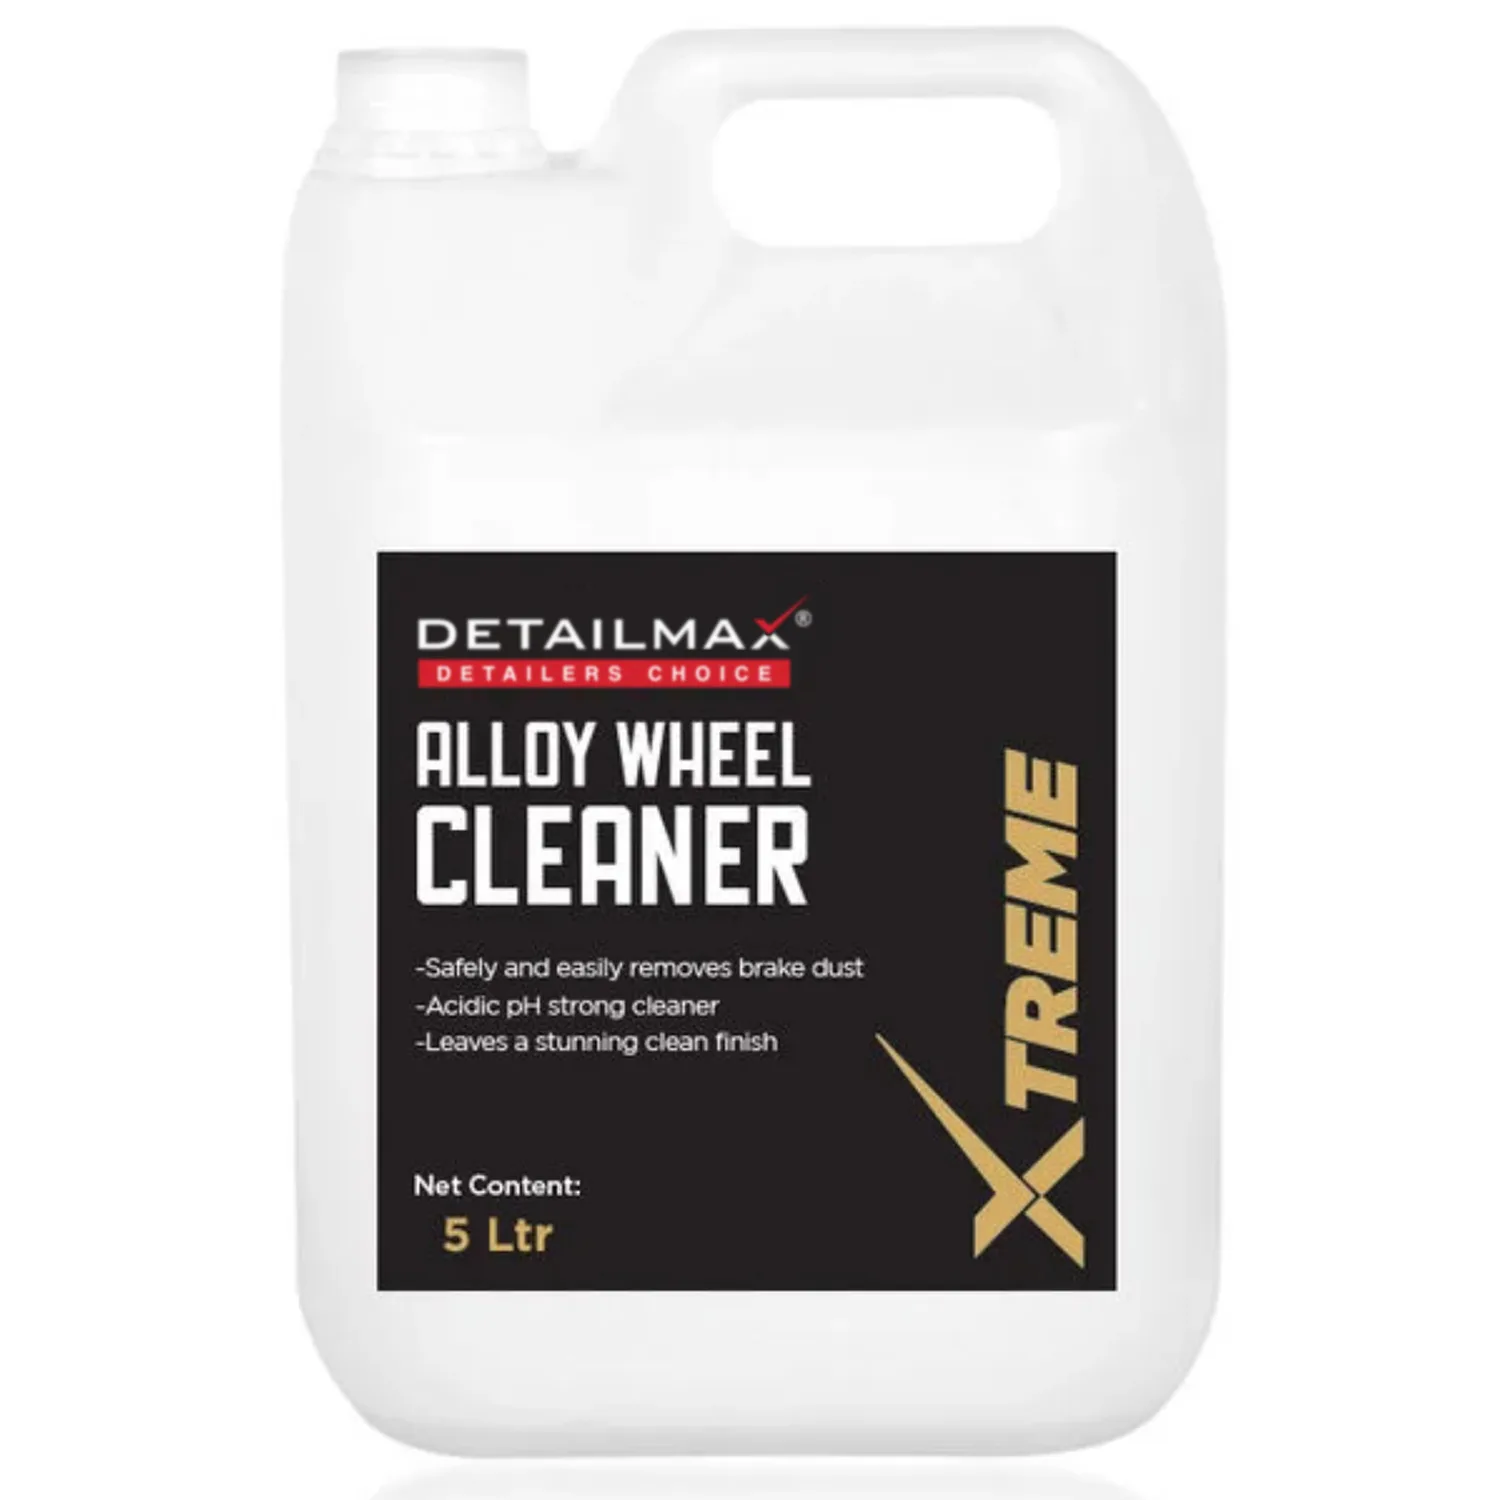 alloy-wheel-cleaner-detailmax-5-litre